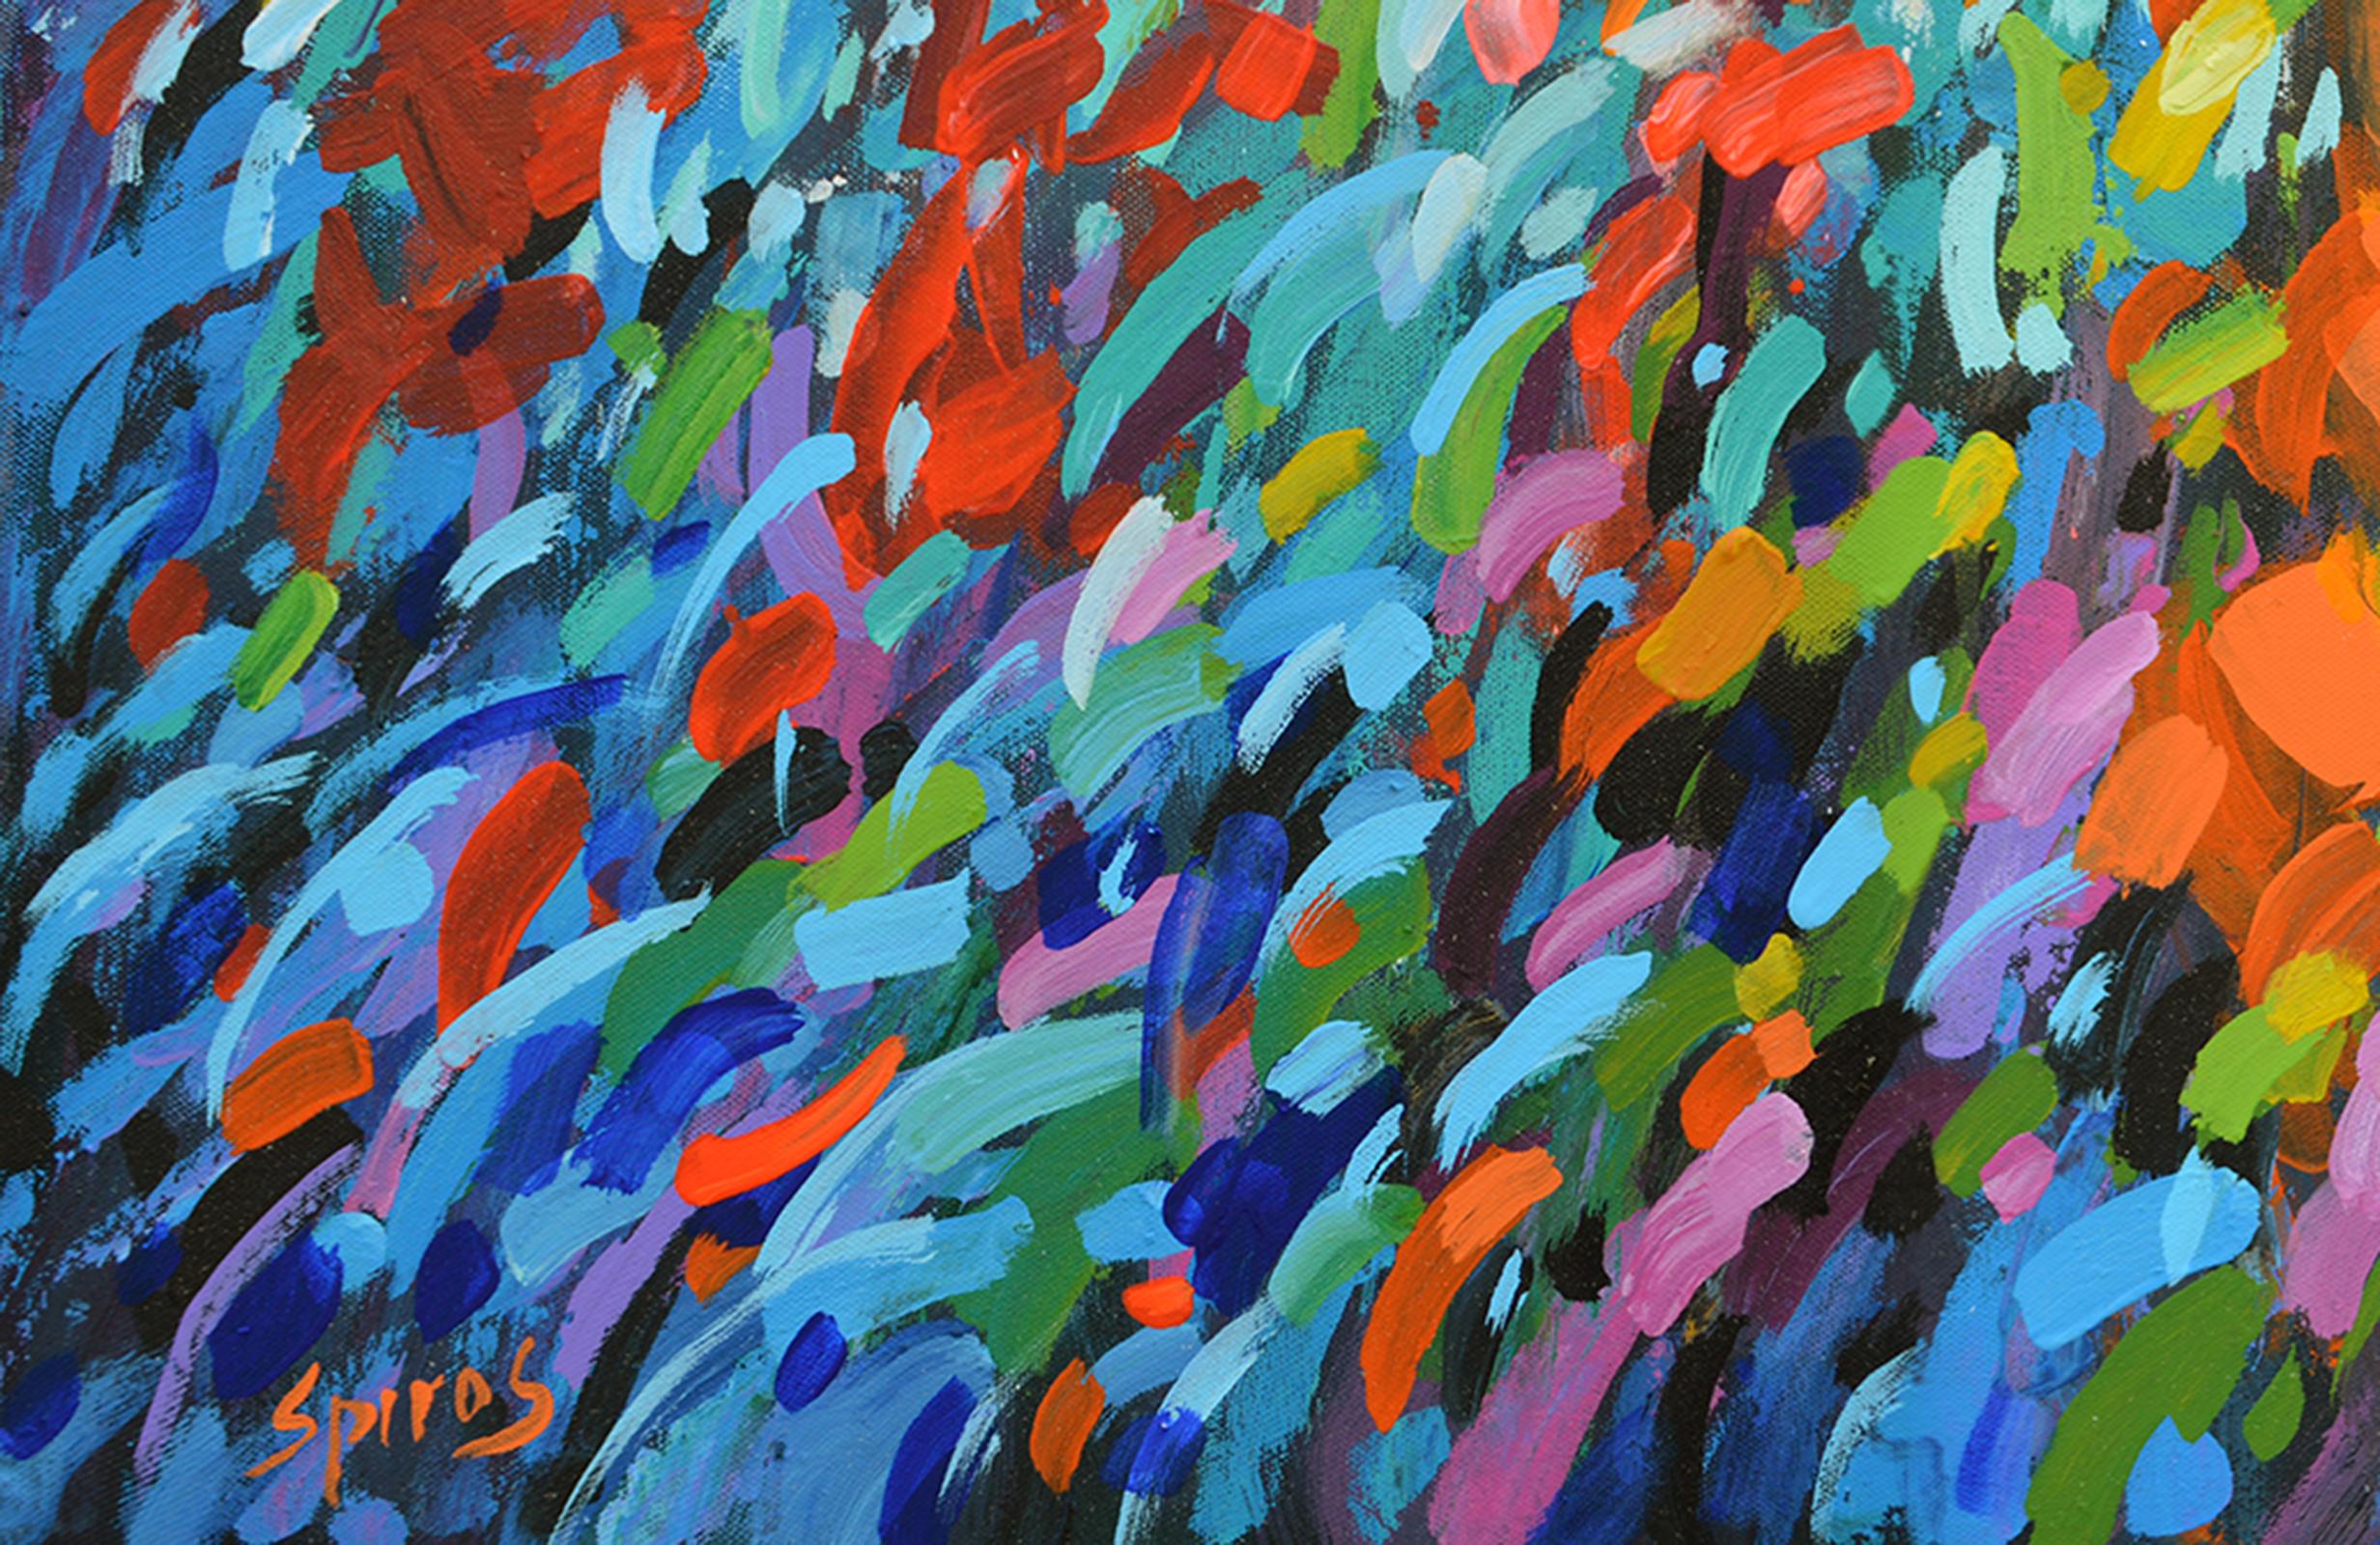 Herbst Lights Farben (Impressionismus), Painting, von Dmitry Spiros